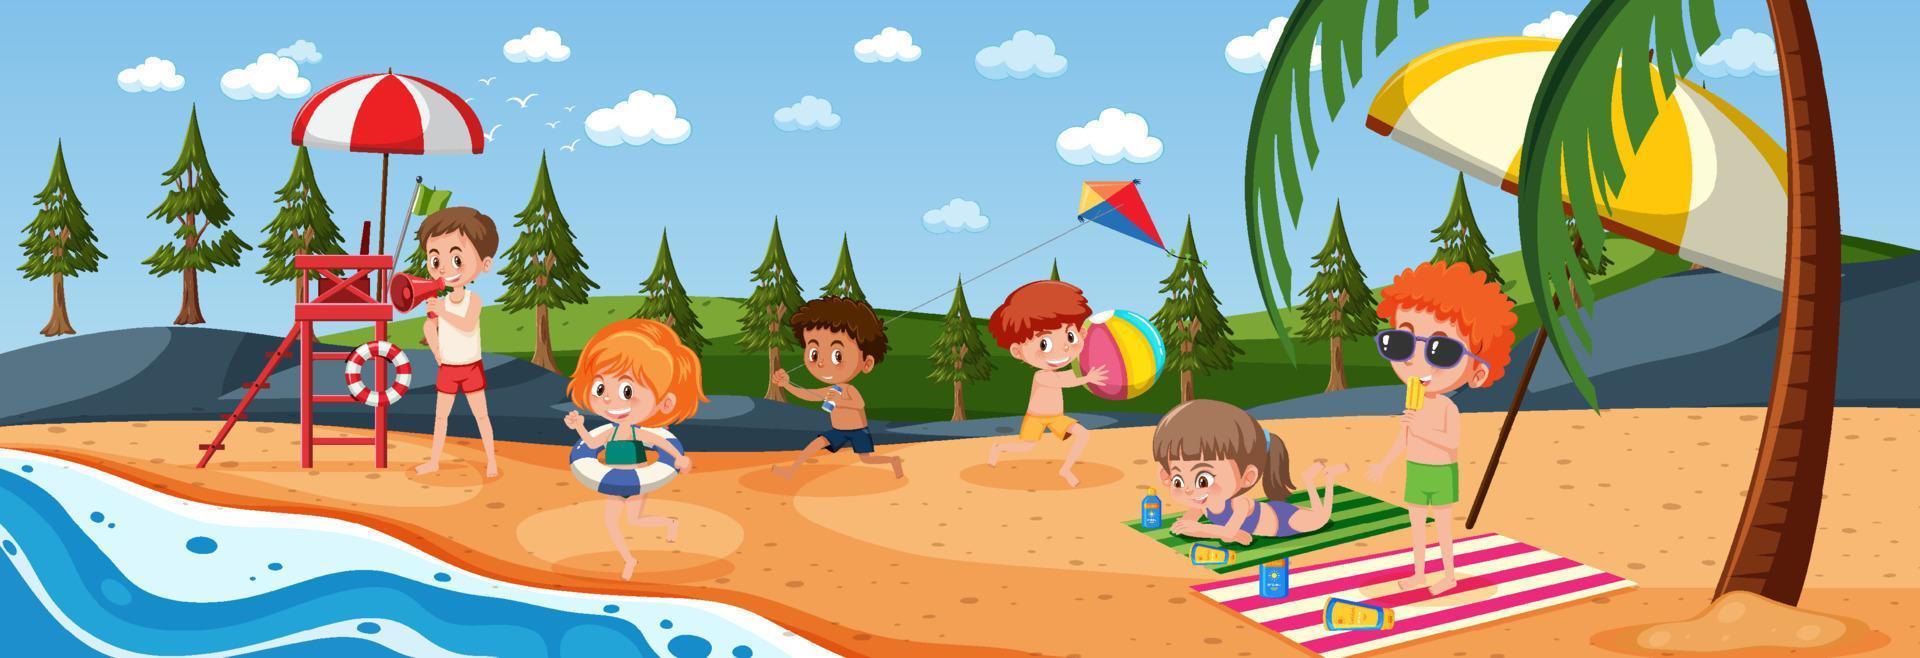 scena orizzontale all'aperto con molti bambini che giocano in spiaggia vettore